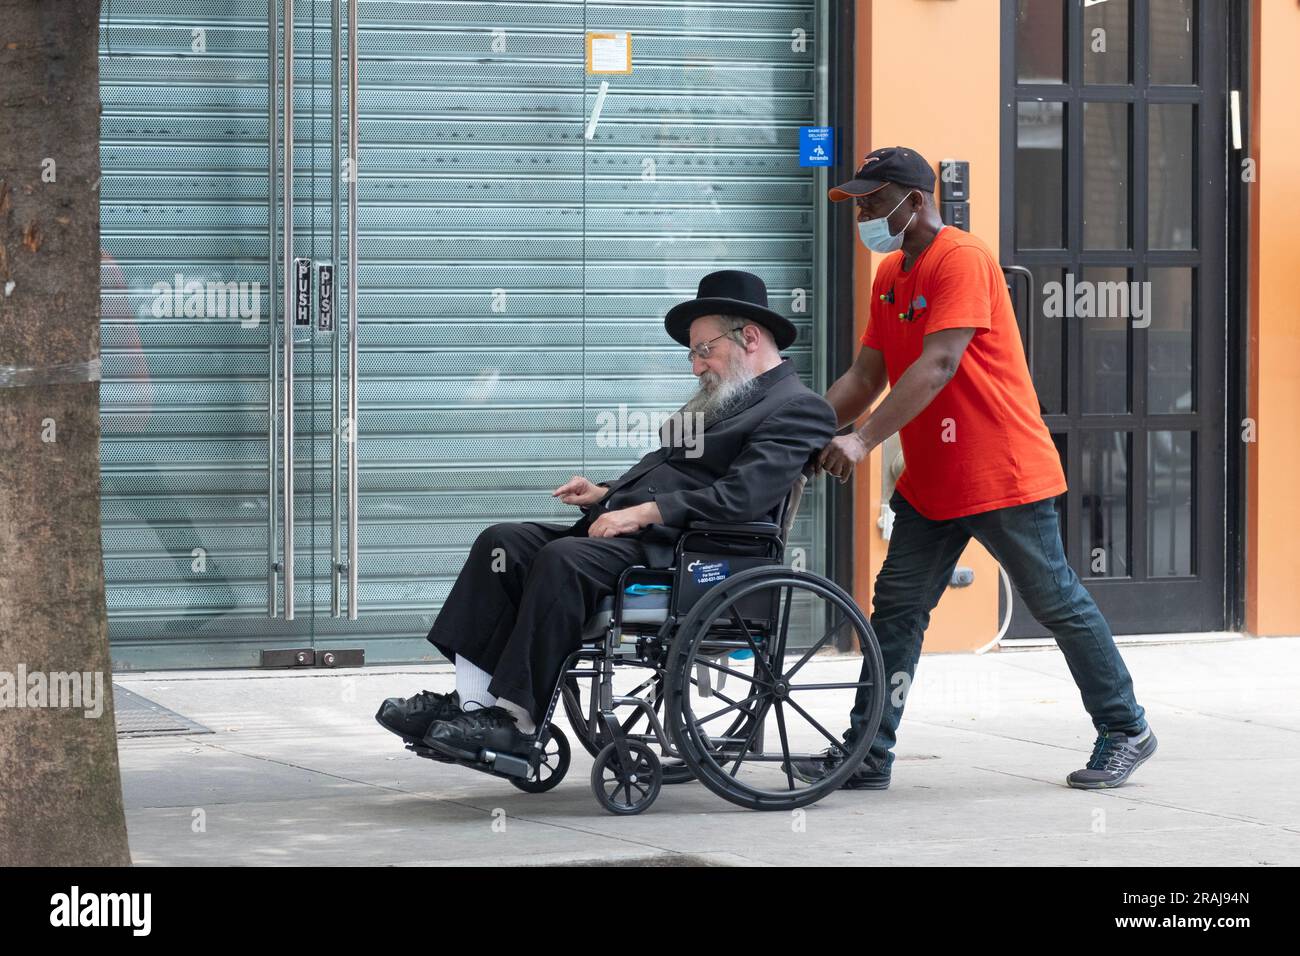 Ein ranghöchster chassidischer Jude im Rollstuhl, unterstützt von seinem Helfer. In einer ruhigen Straße in Brooklyn, New York. Stockfoto